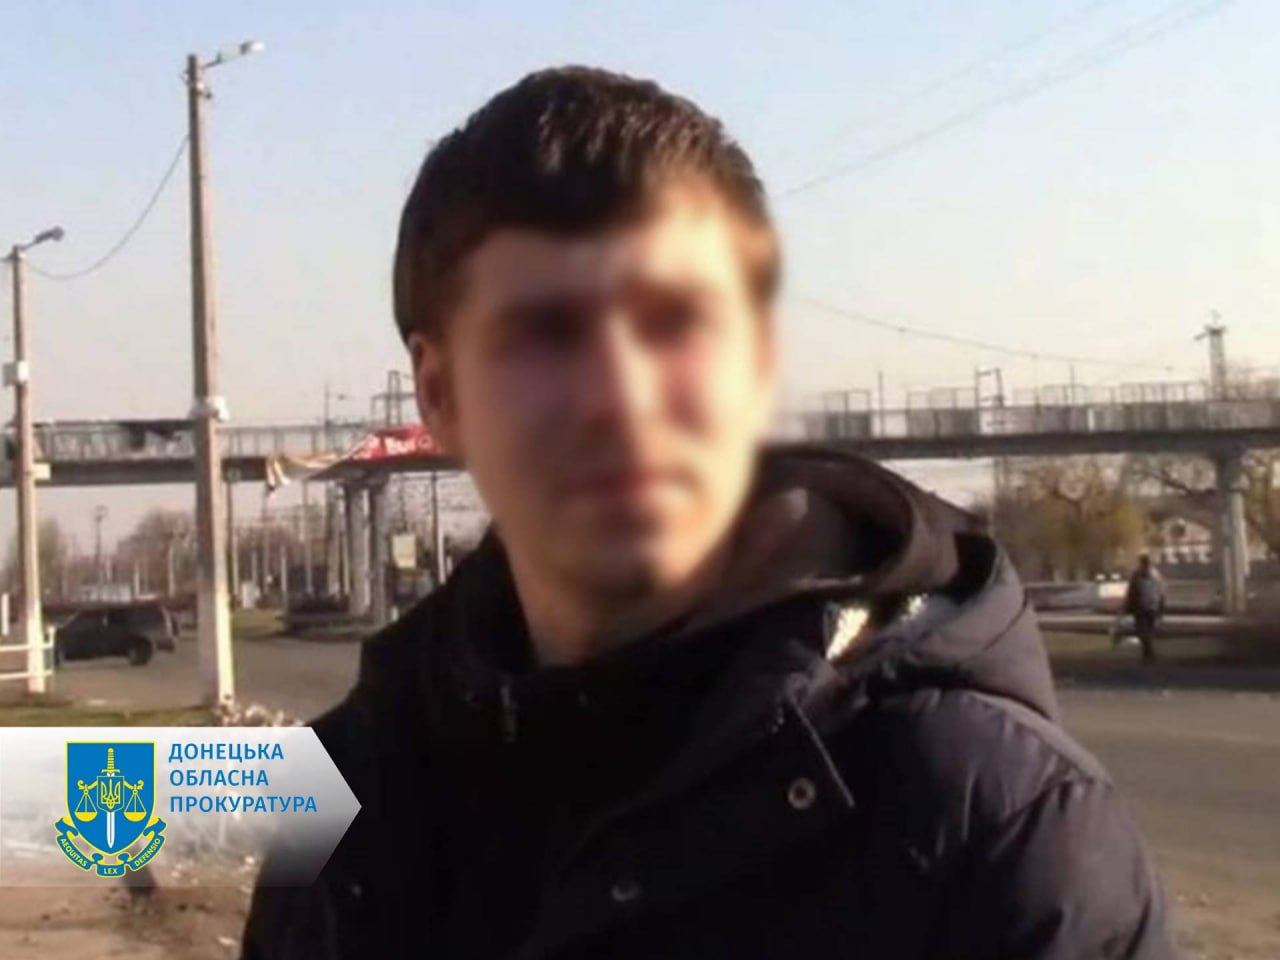 13 и 14 лет за решеткой: в Донецкой области за корректировку огня оккупантов осудили еще двух жителей 3